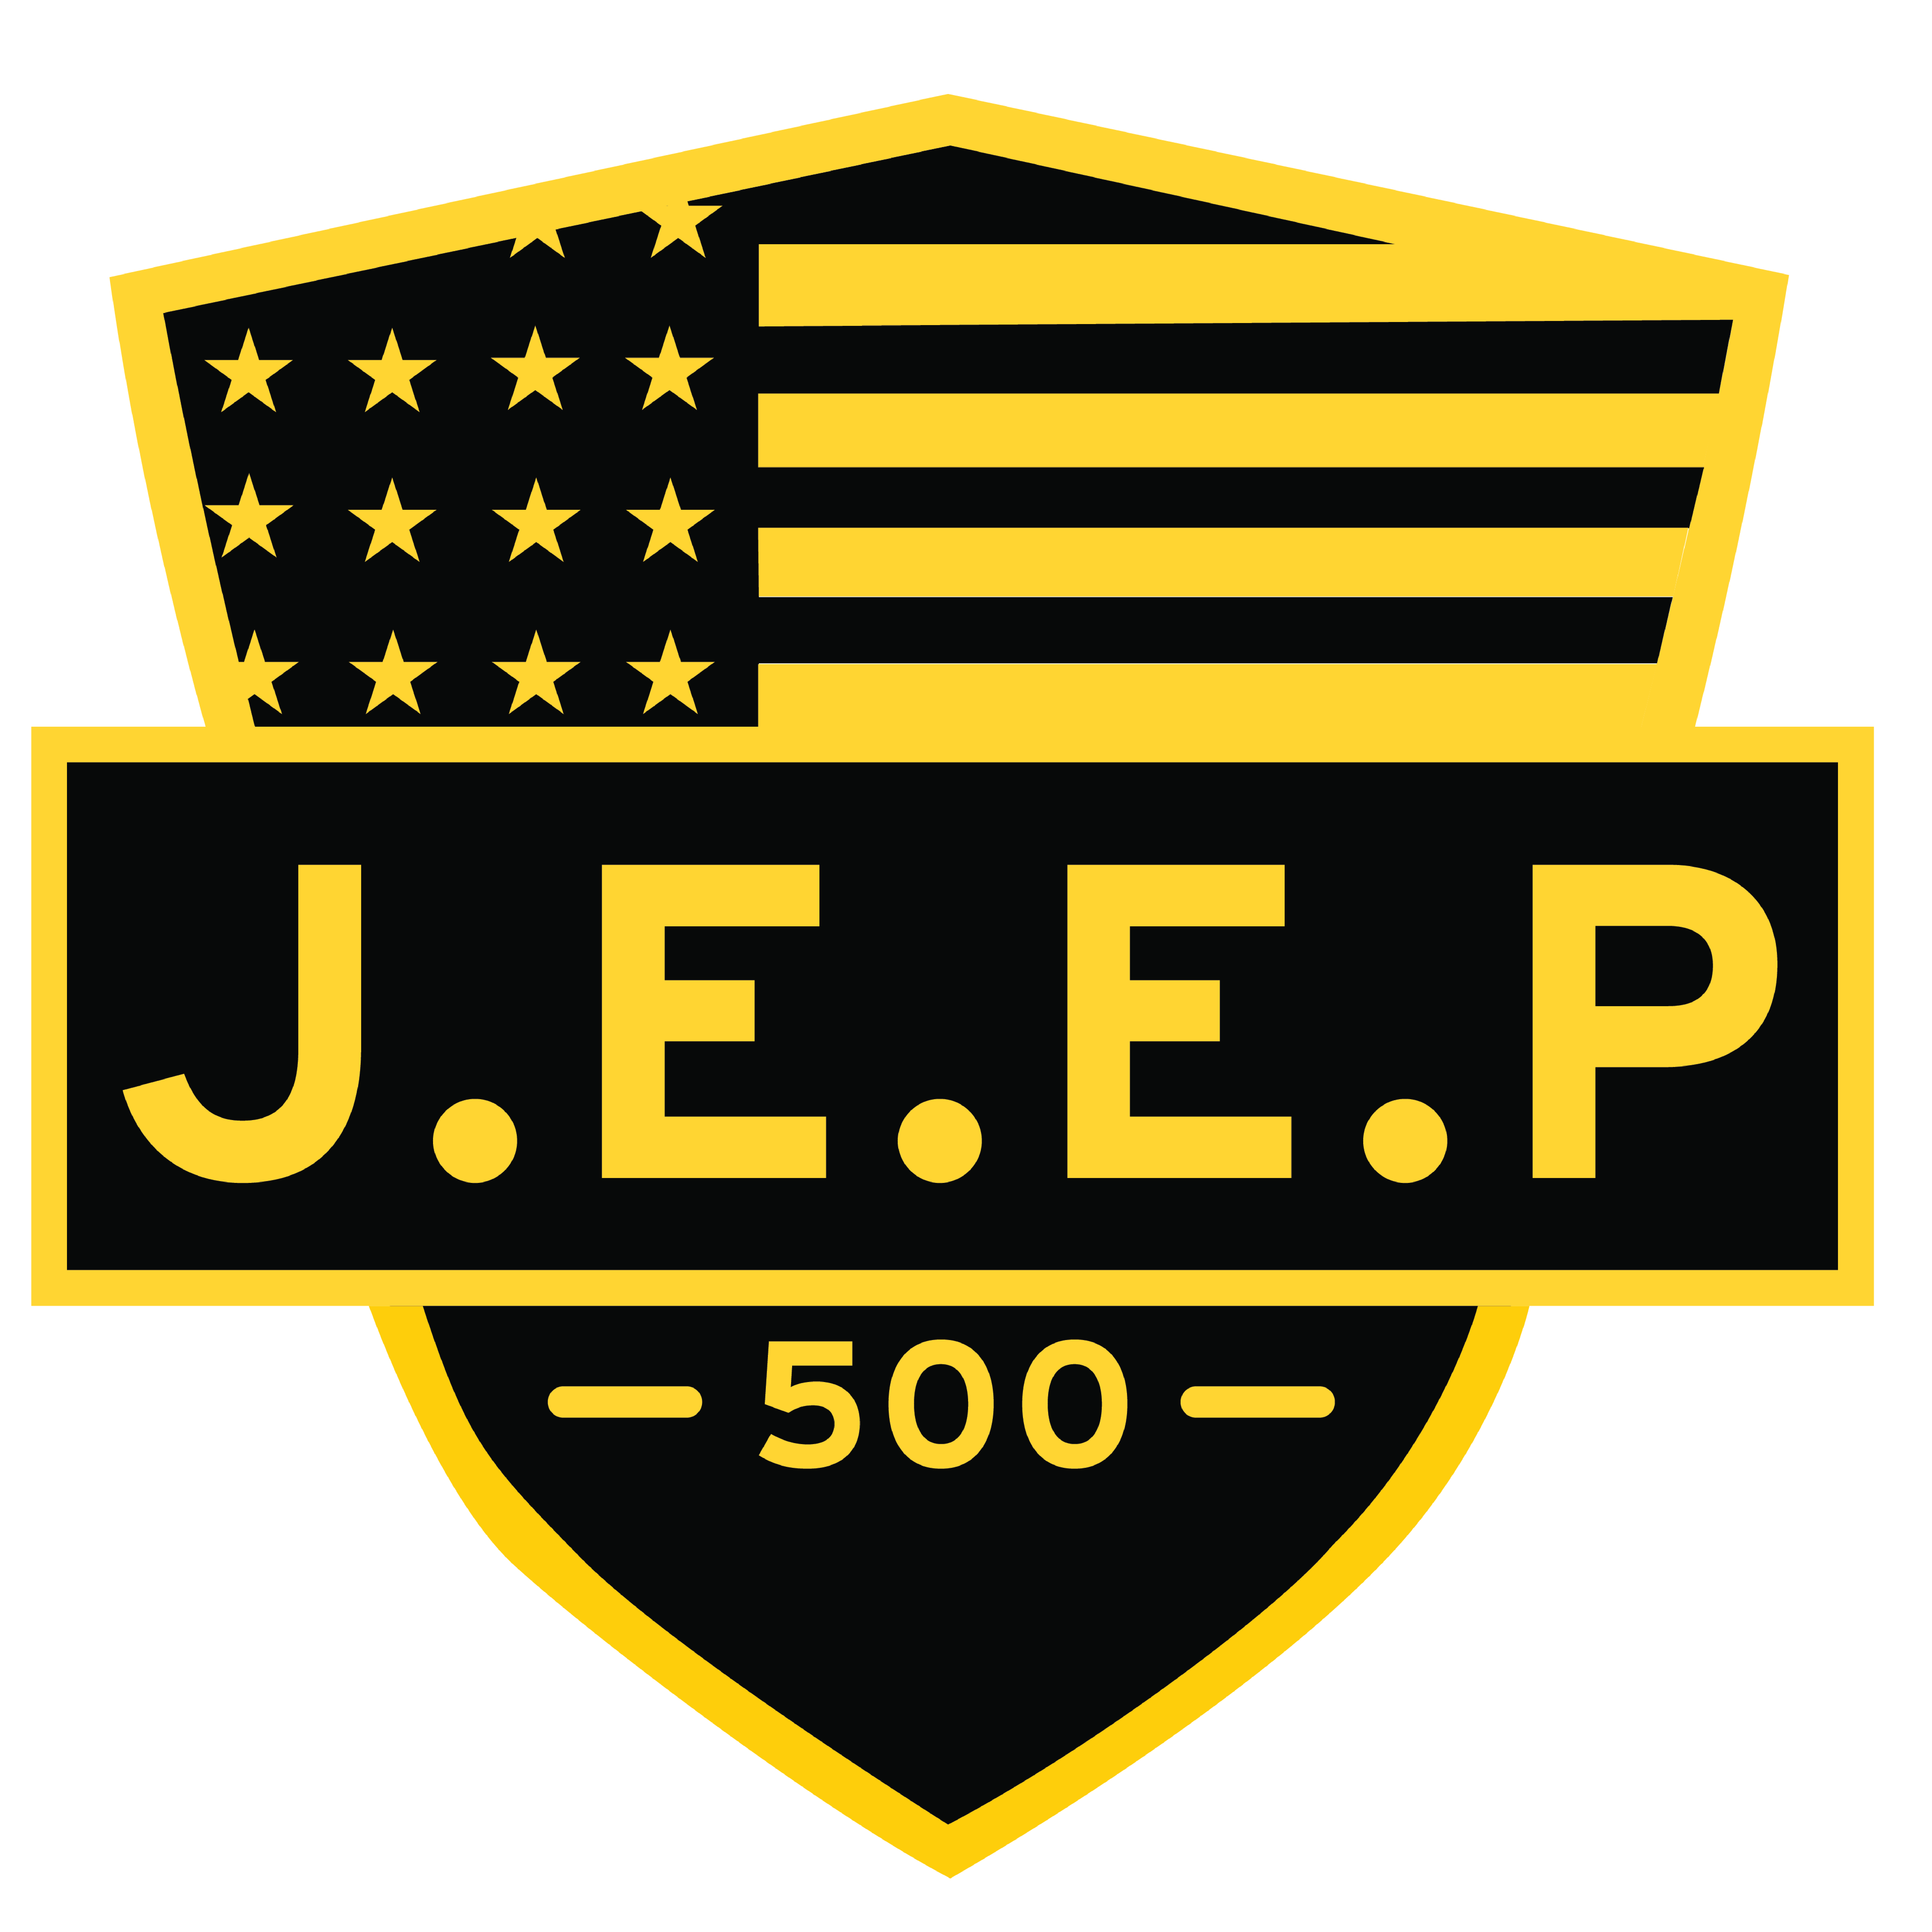 J.E.E.P. logo